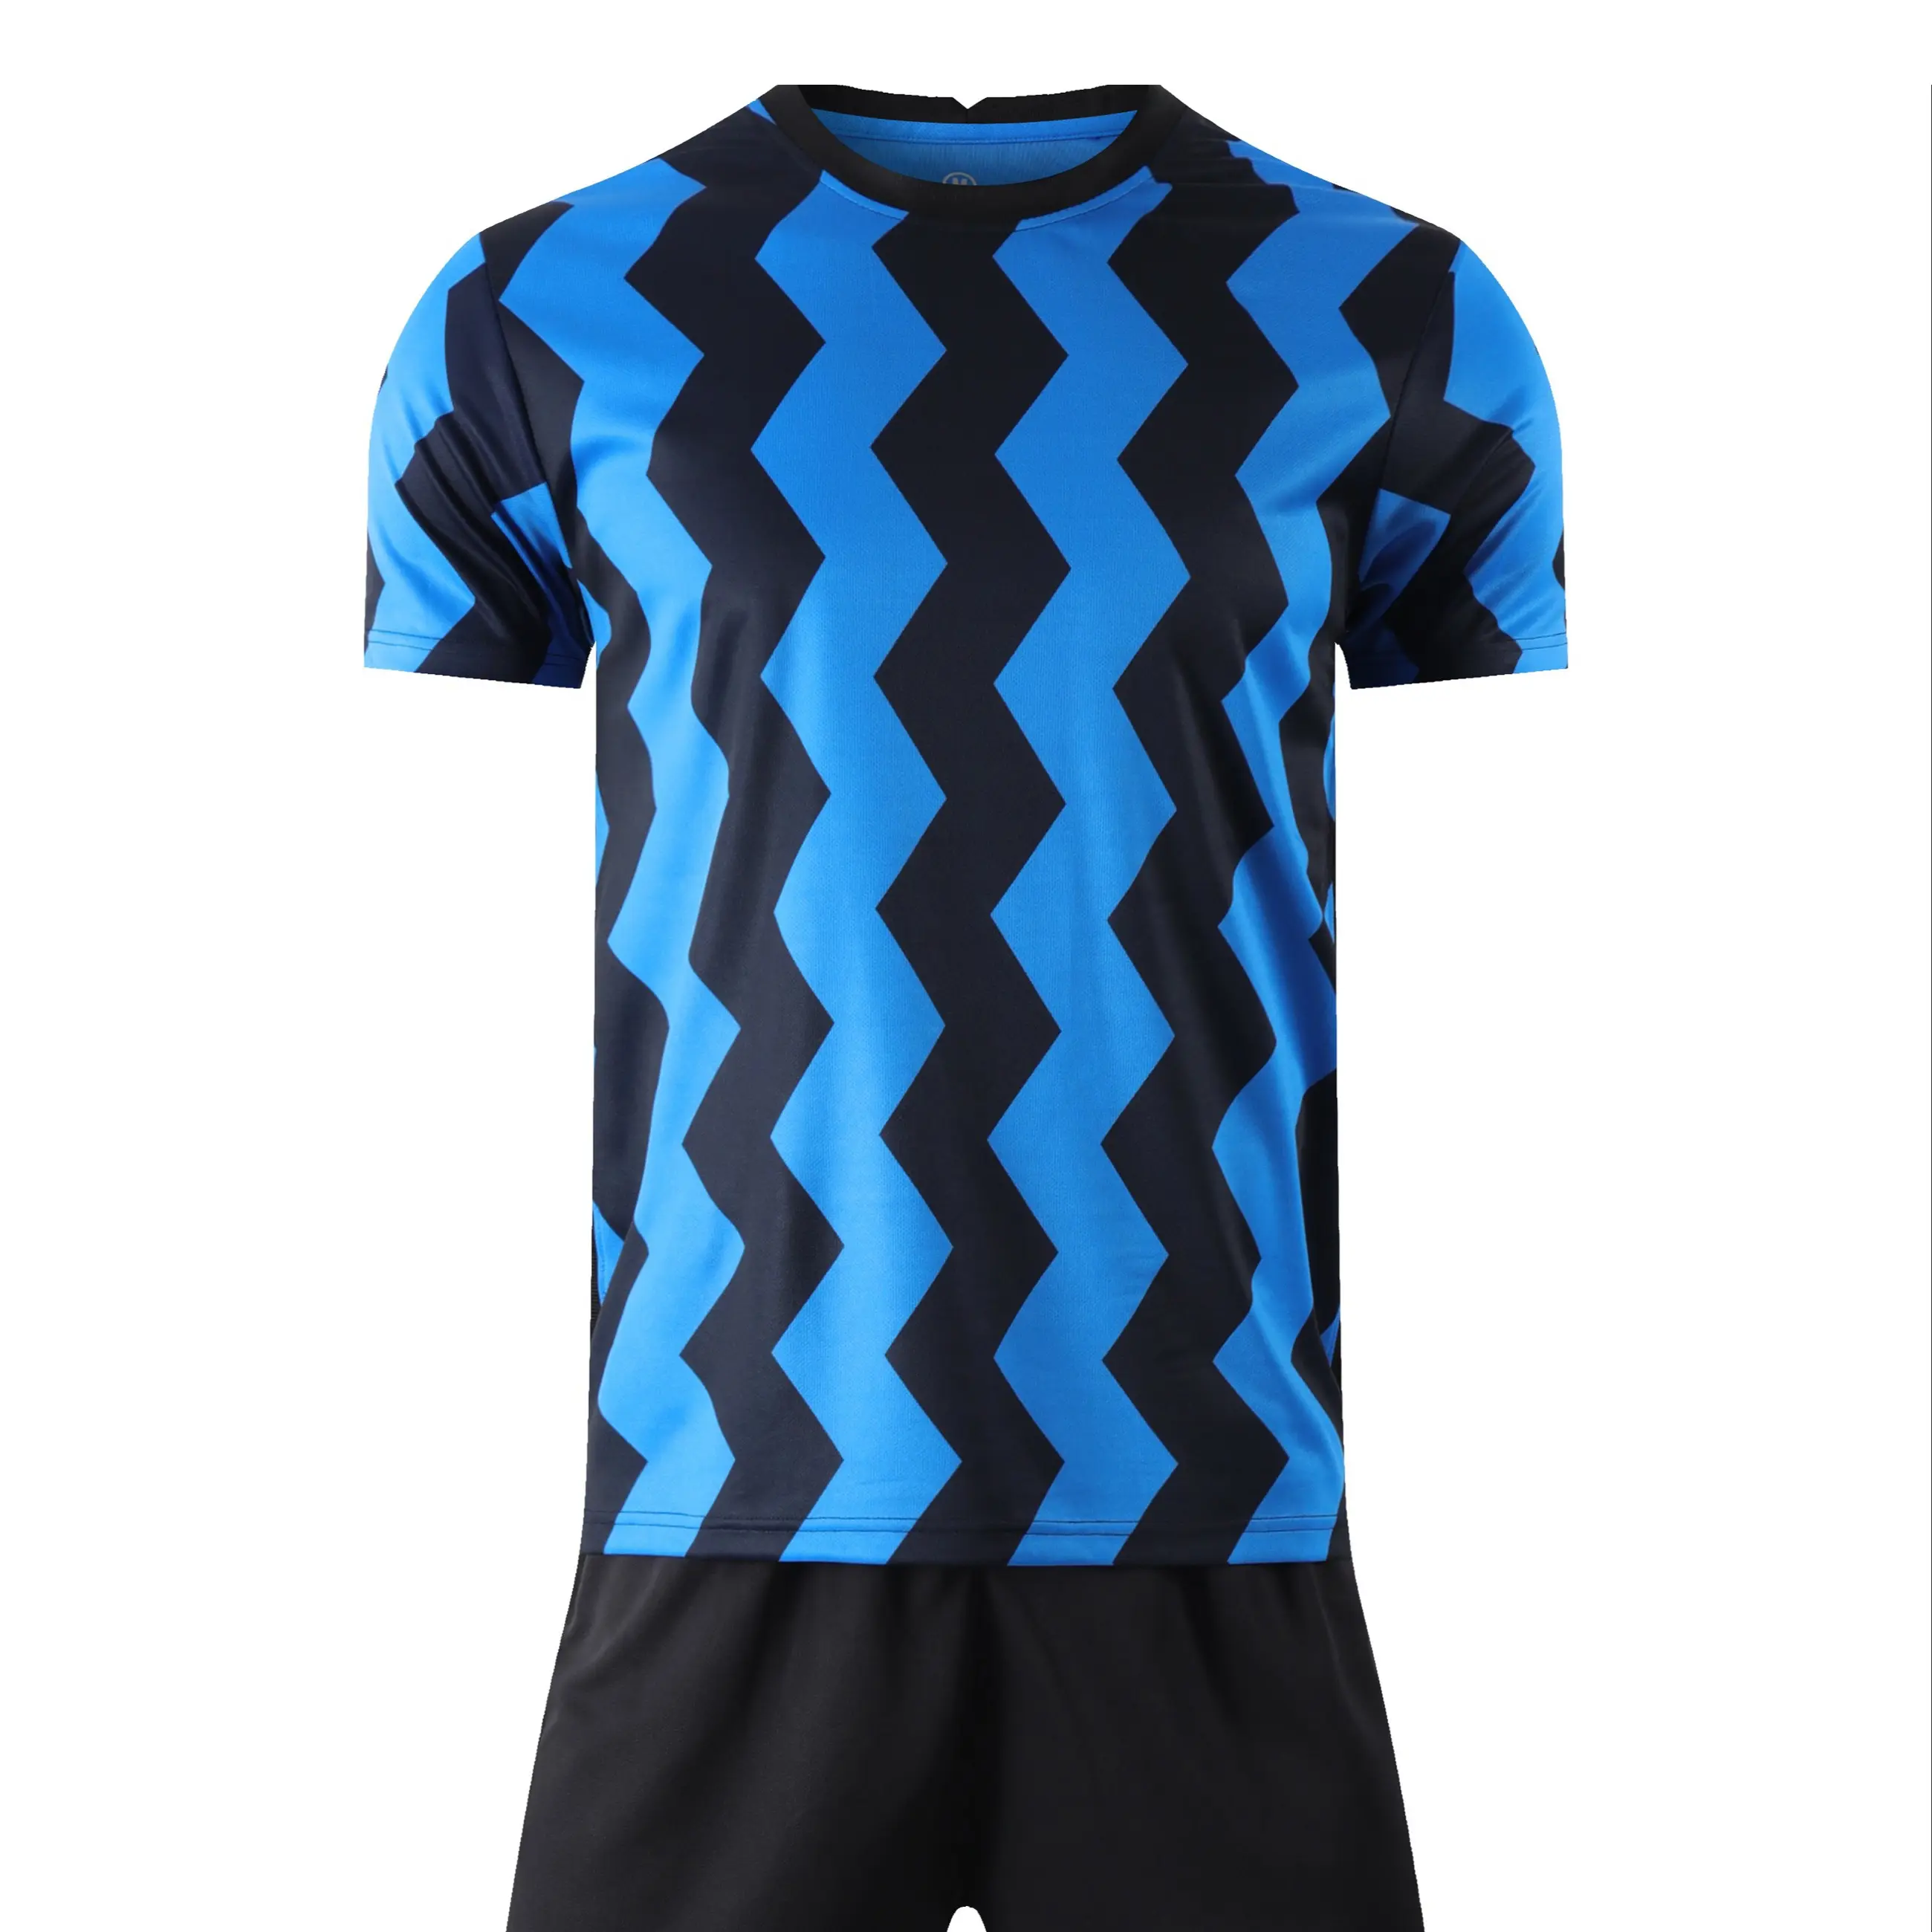 Moda stil süblimasyon Custom Made ucuz toptan futbol forması siyah mavi renk gömlek ve şort takımı